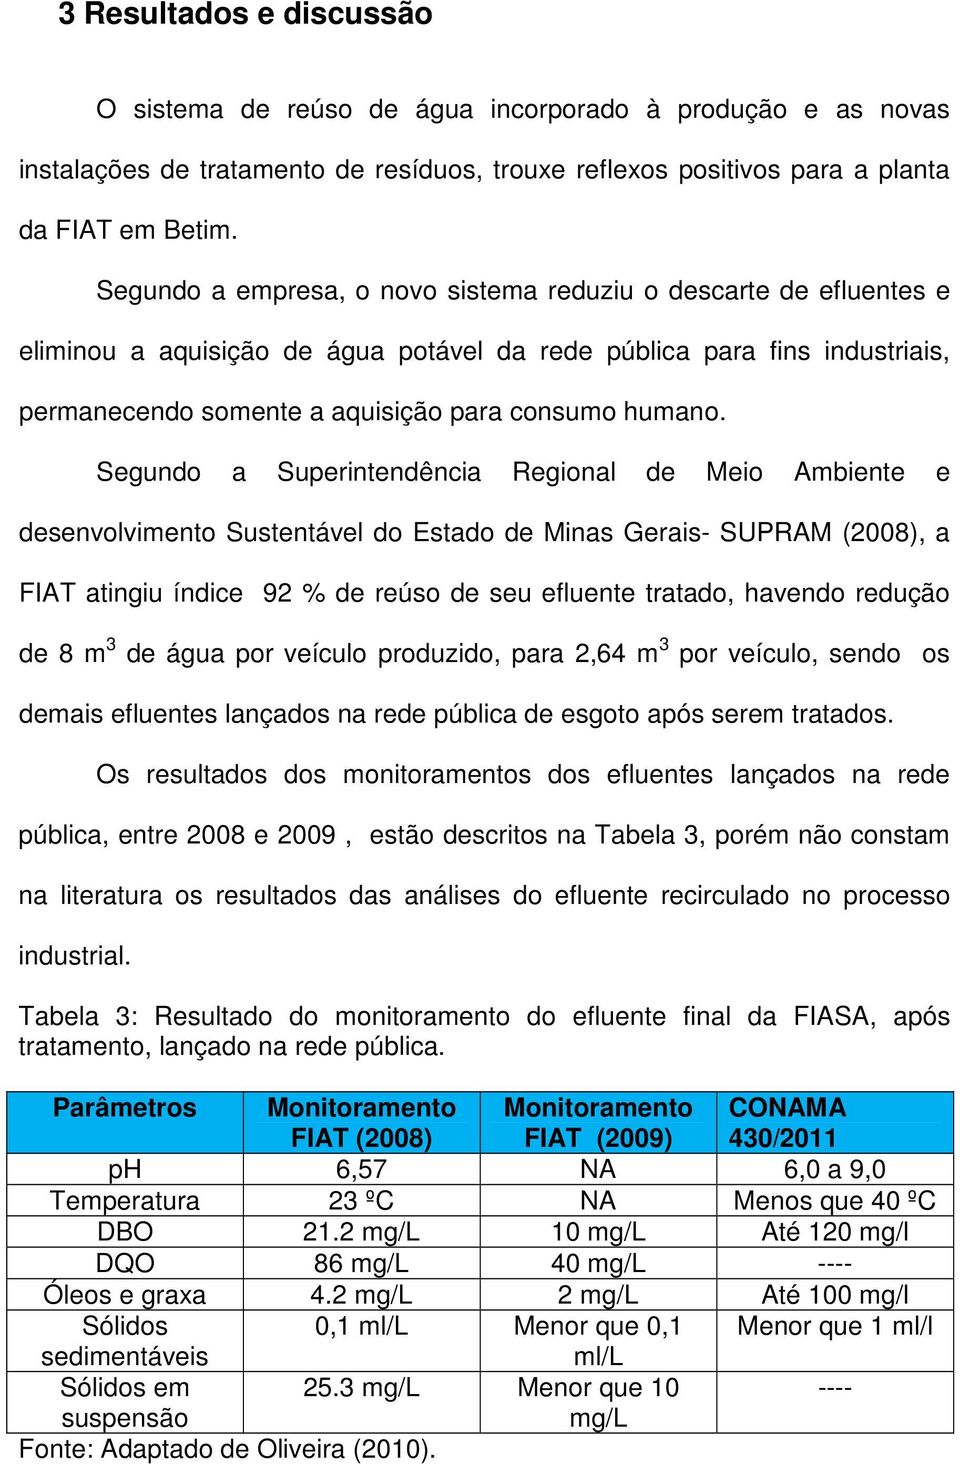 Segundo a Superintendência Regional de Meio Ambiente e desenvolvimento Sustentável do Estado de Minas Gerais- SUPRAM (2008), a FIAT atingiu índice 92 % de reúso de seu efluente tratado, havendo